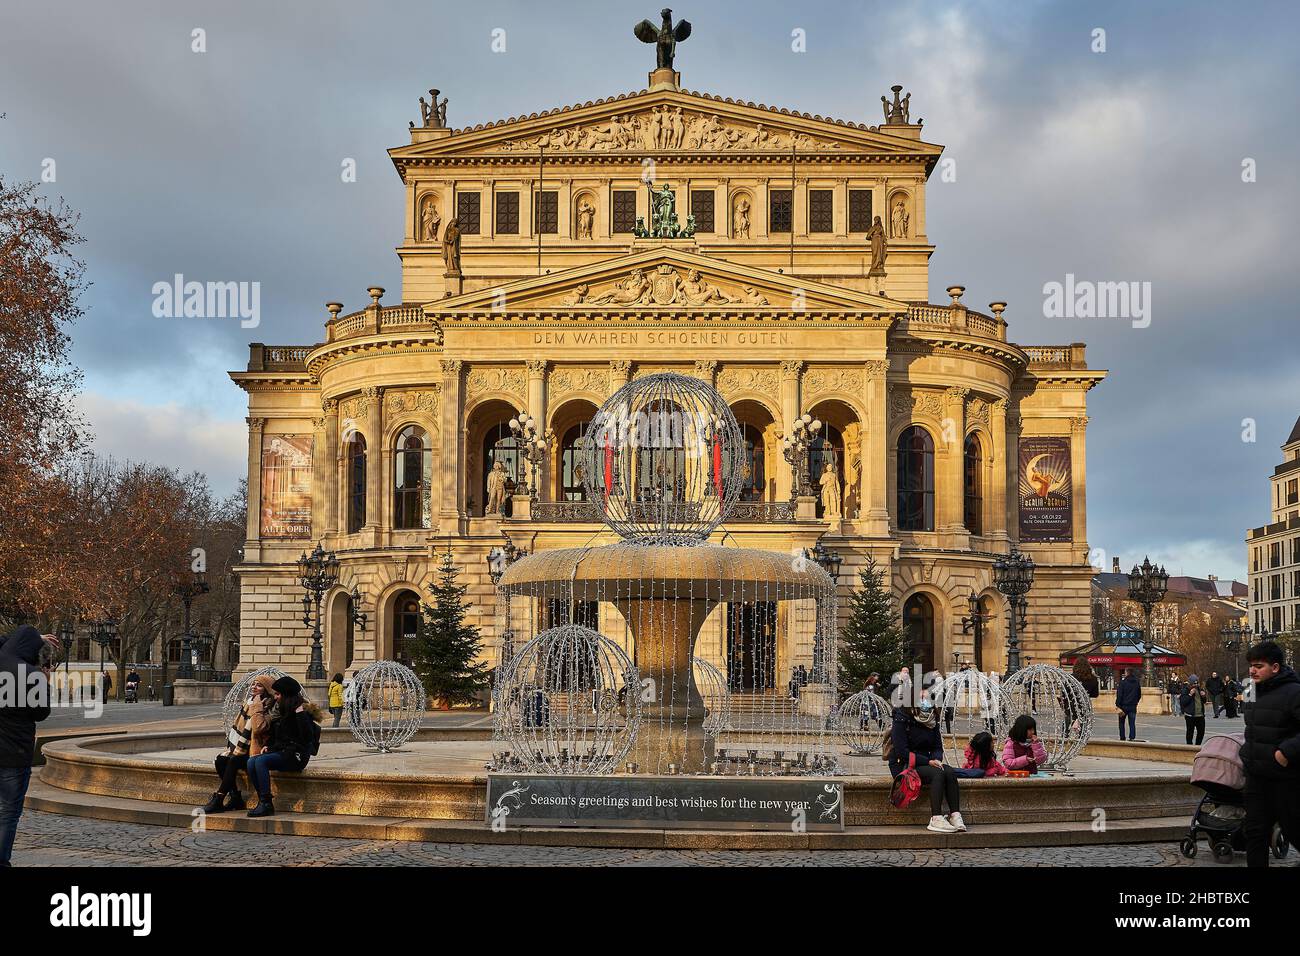 Lucae-Brunnen mit Weihnachtsdekoration, Seasonal Greetings, Alte Oper, Opernplatz, Innenstadt, Frankfurt am Main, Hessen, Deutschland, Europ Foto Stock